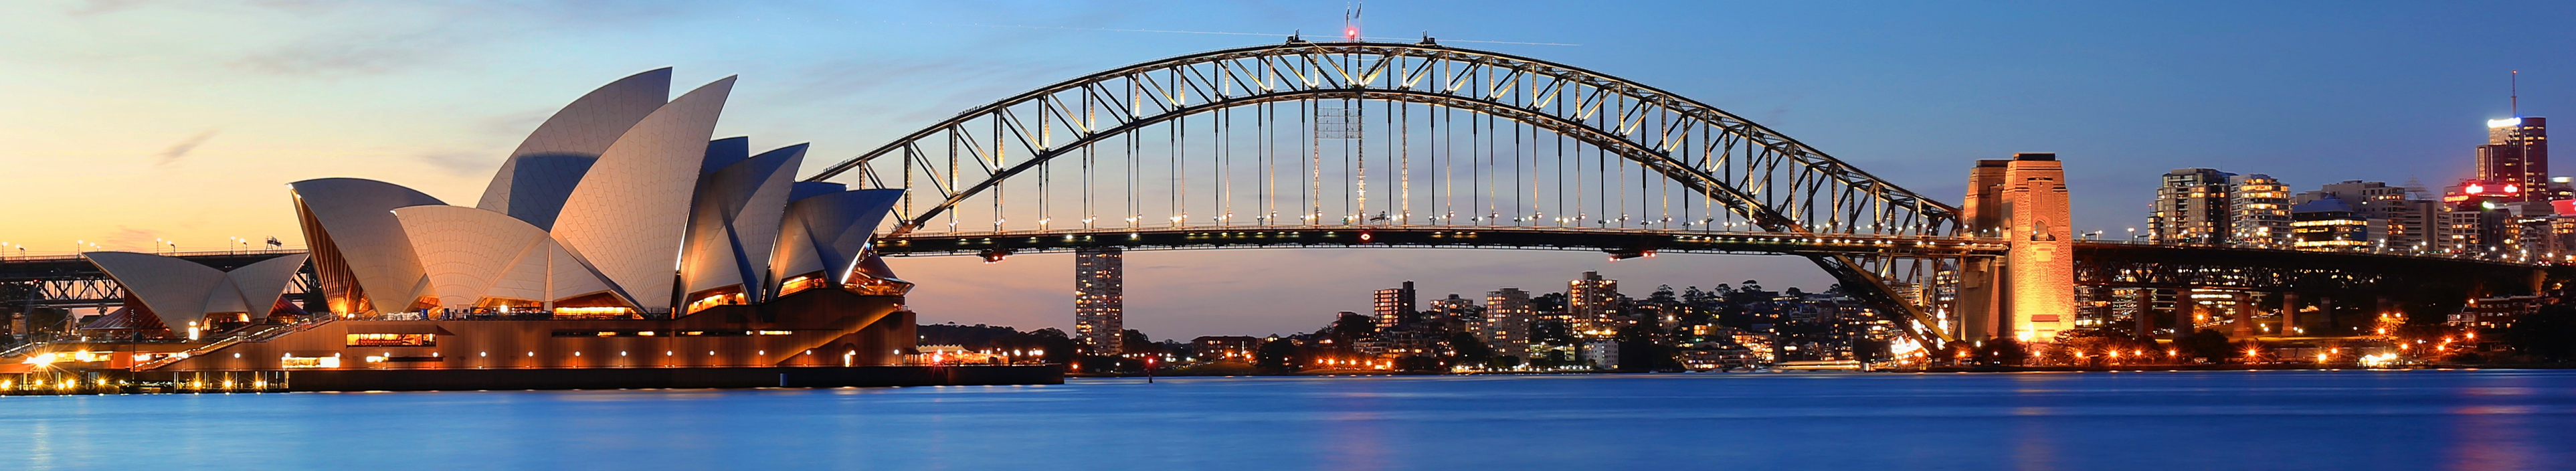 Opernhaus und Harbour Bridge in Sydney